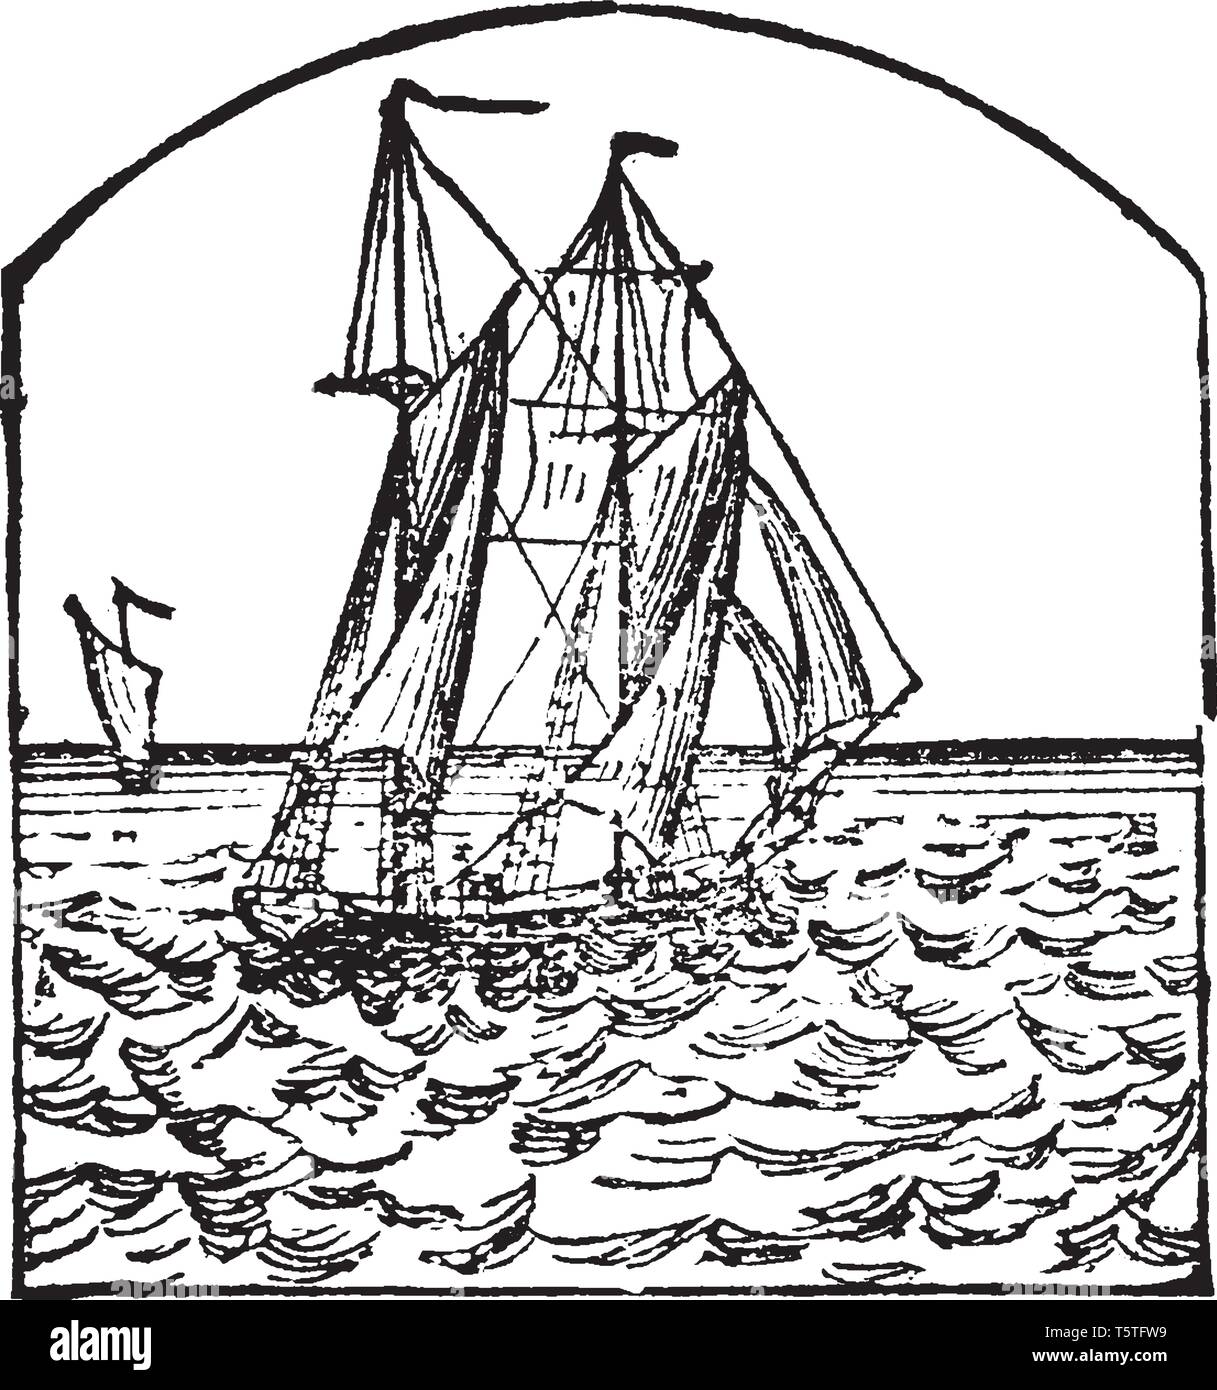 Schoner ist eine kleine scharfe gebaute Schiff in der Regel mit zwei Masten mit Vorwärts- und Rückwärtseinstellung Segel, vintage Strichzeichnung oder Gravur Abbildung. Stock Vektor